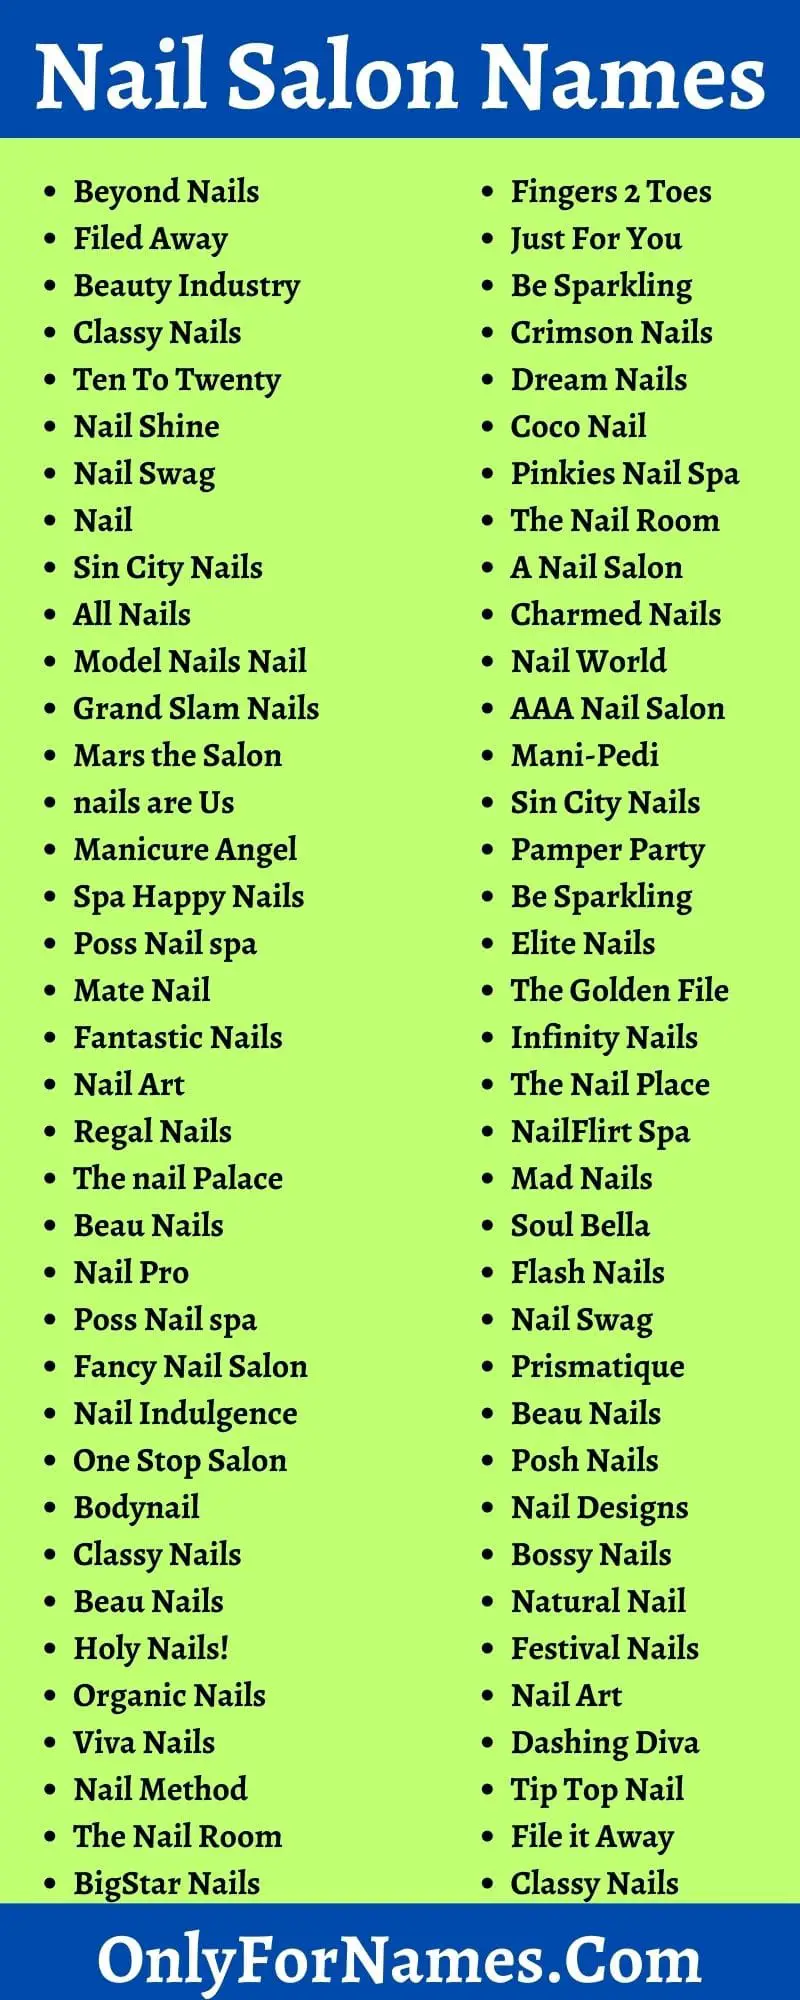 Nail Salon Names